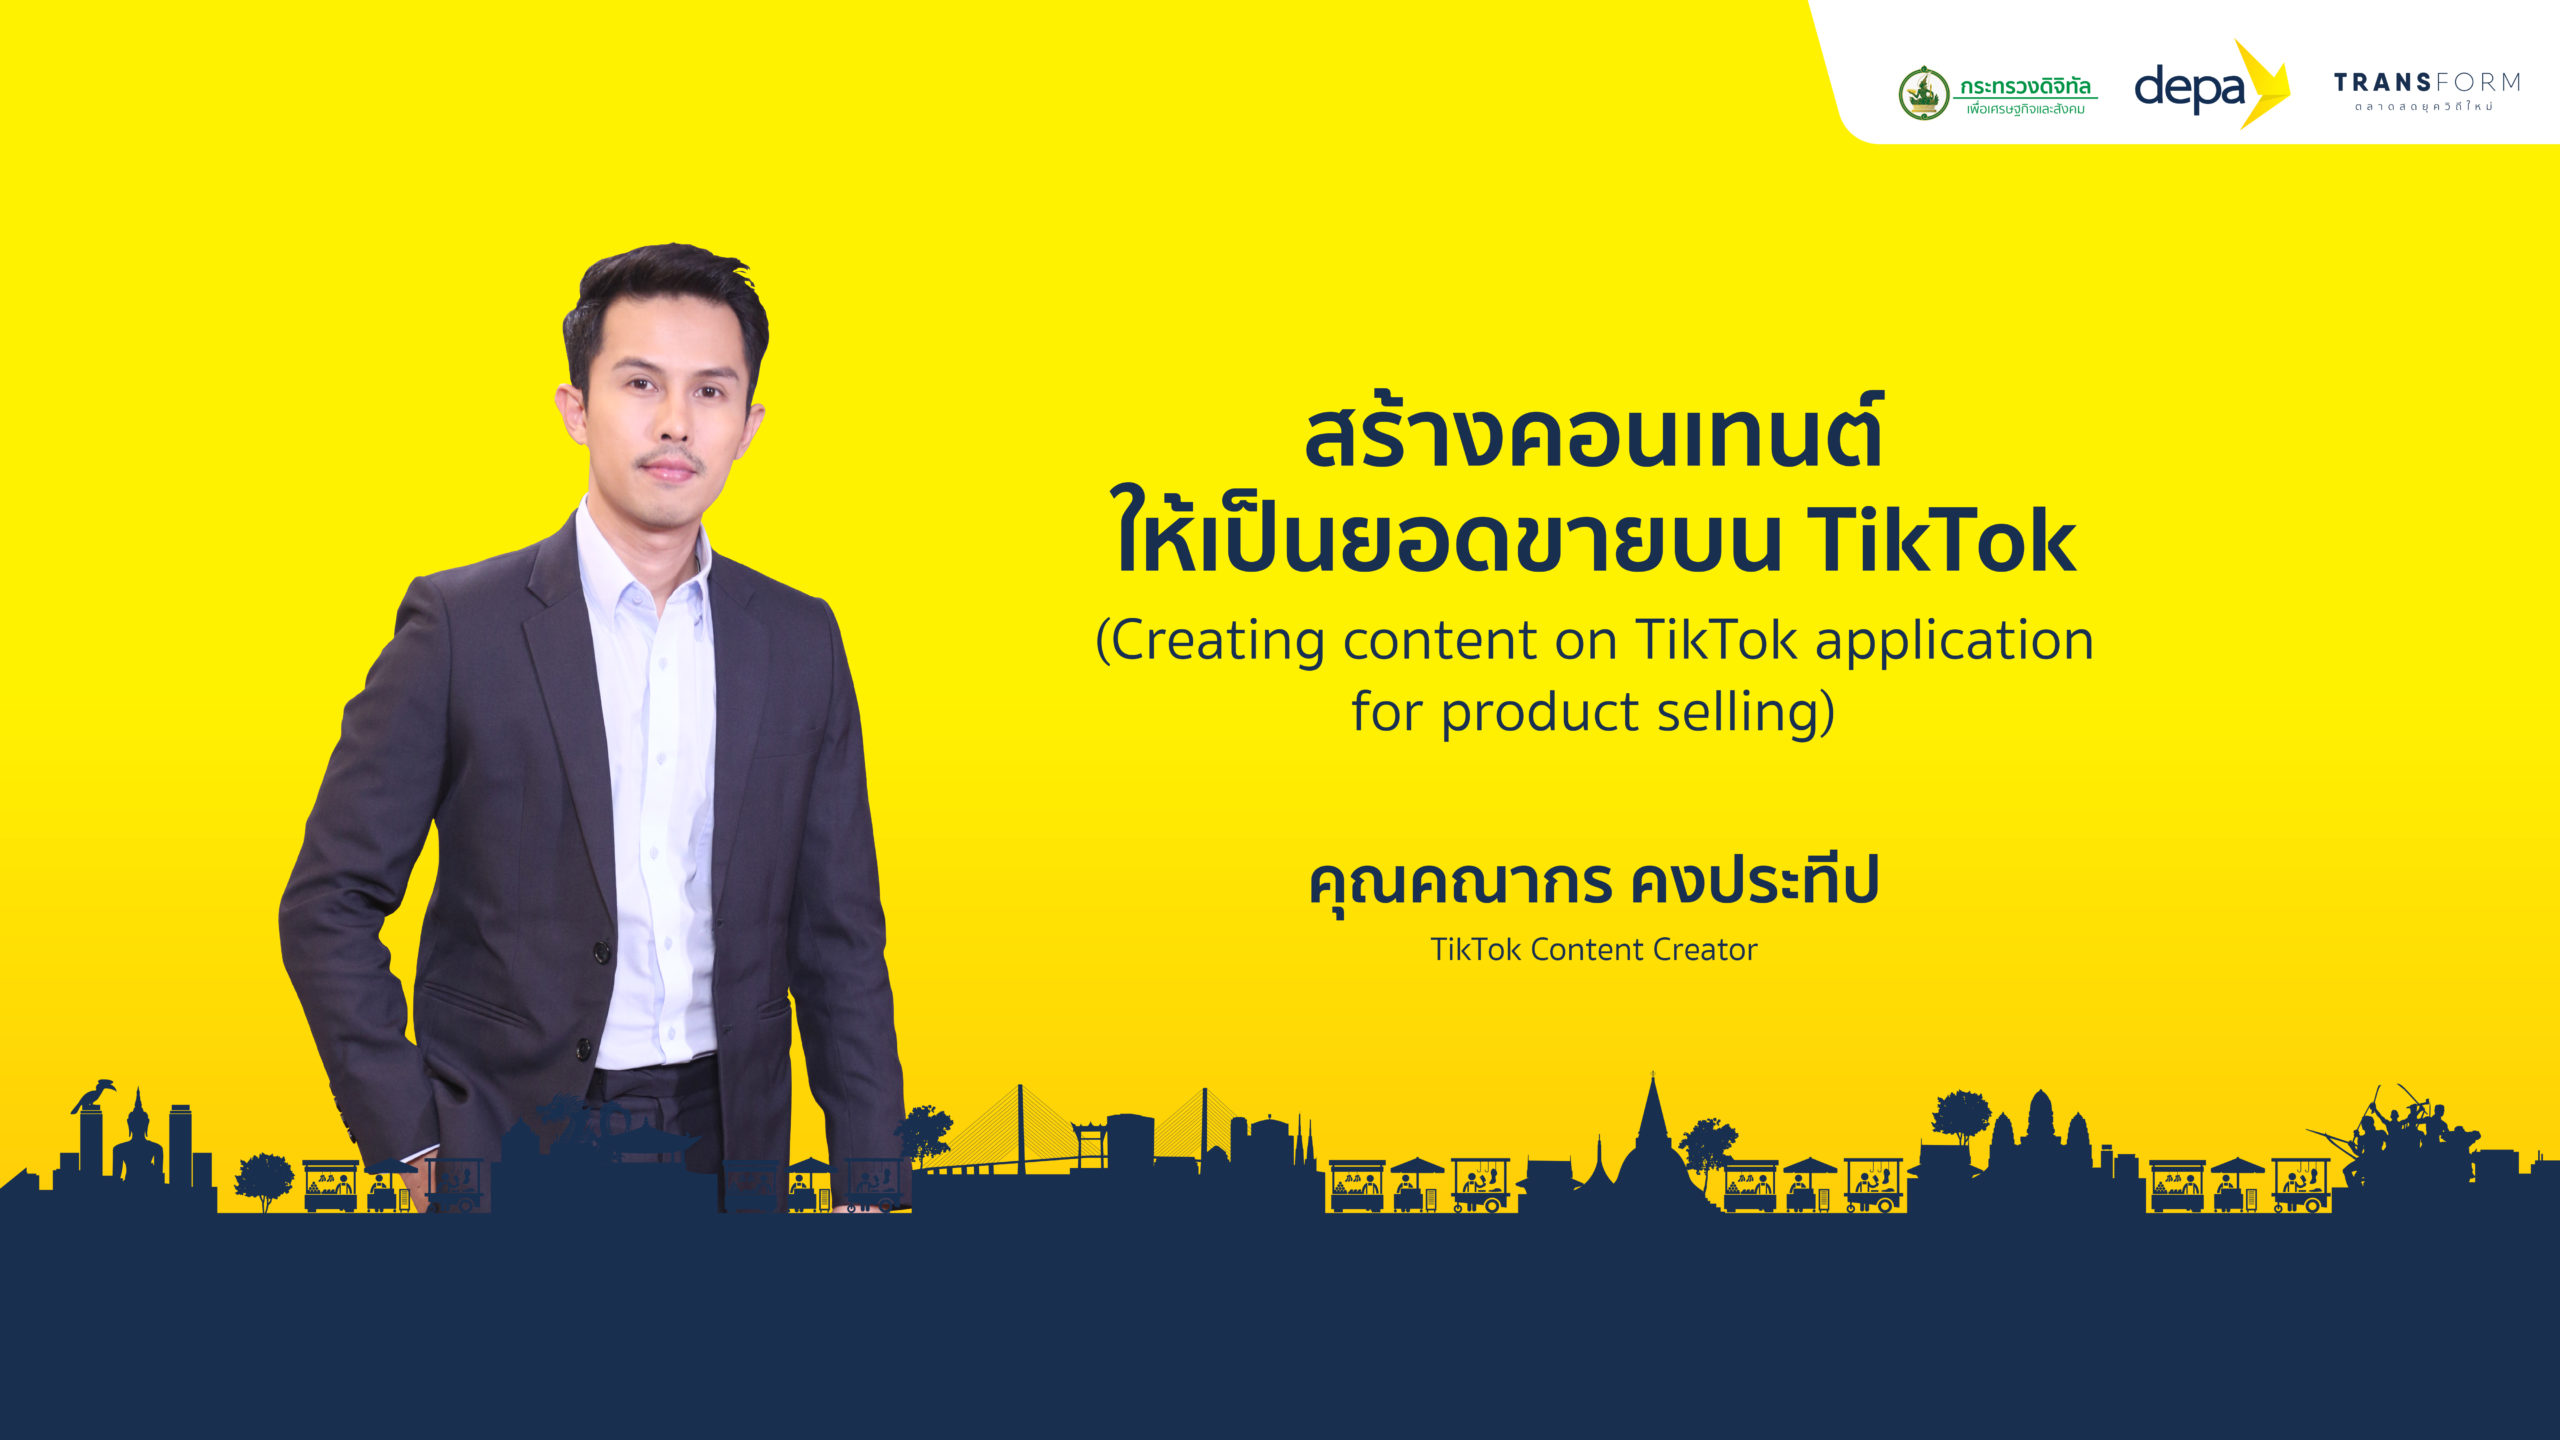 สร้างคอนเทนต์ให้เป็นยอดขายบน TikTok (Creating content on TikTok application for product selling)